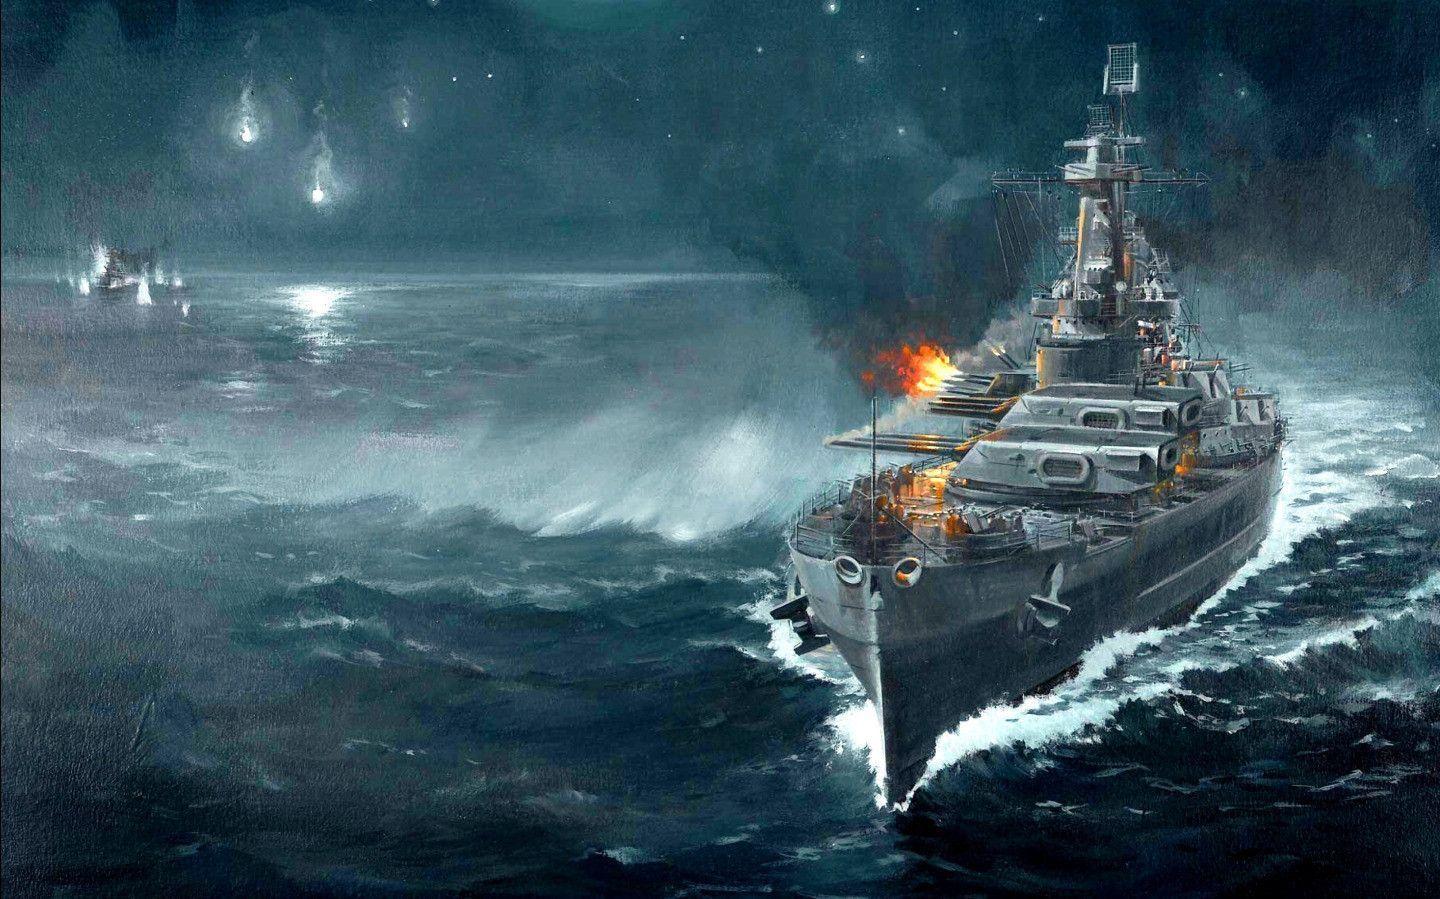 Sea Battleship widescreen wallpaper. Wide